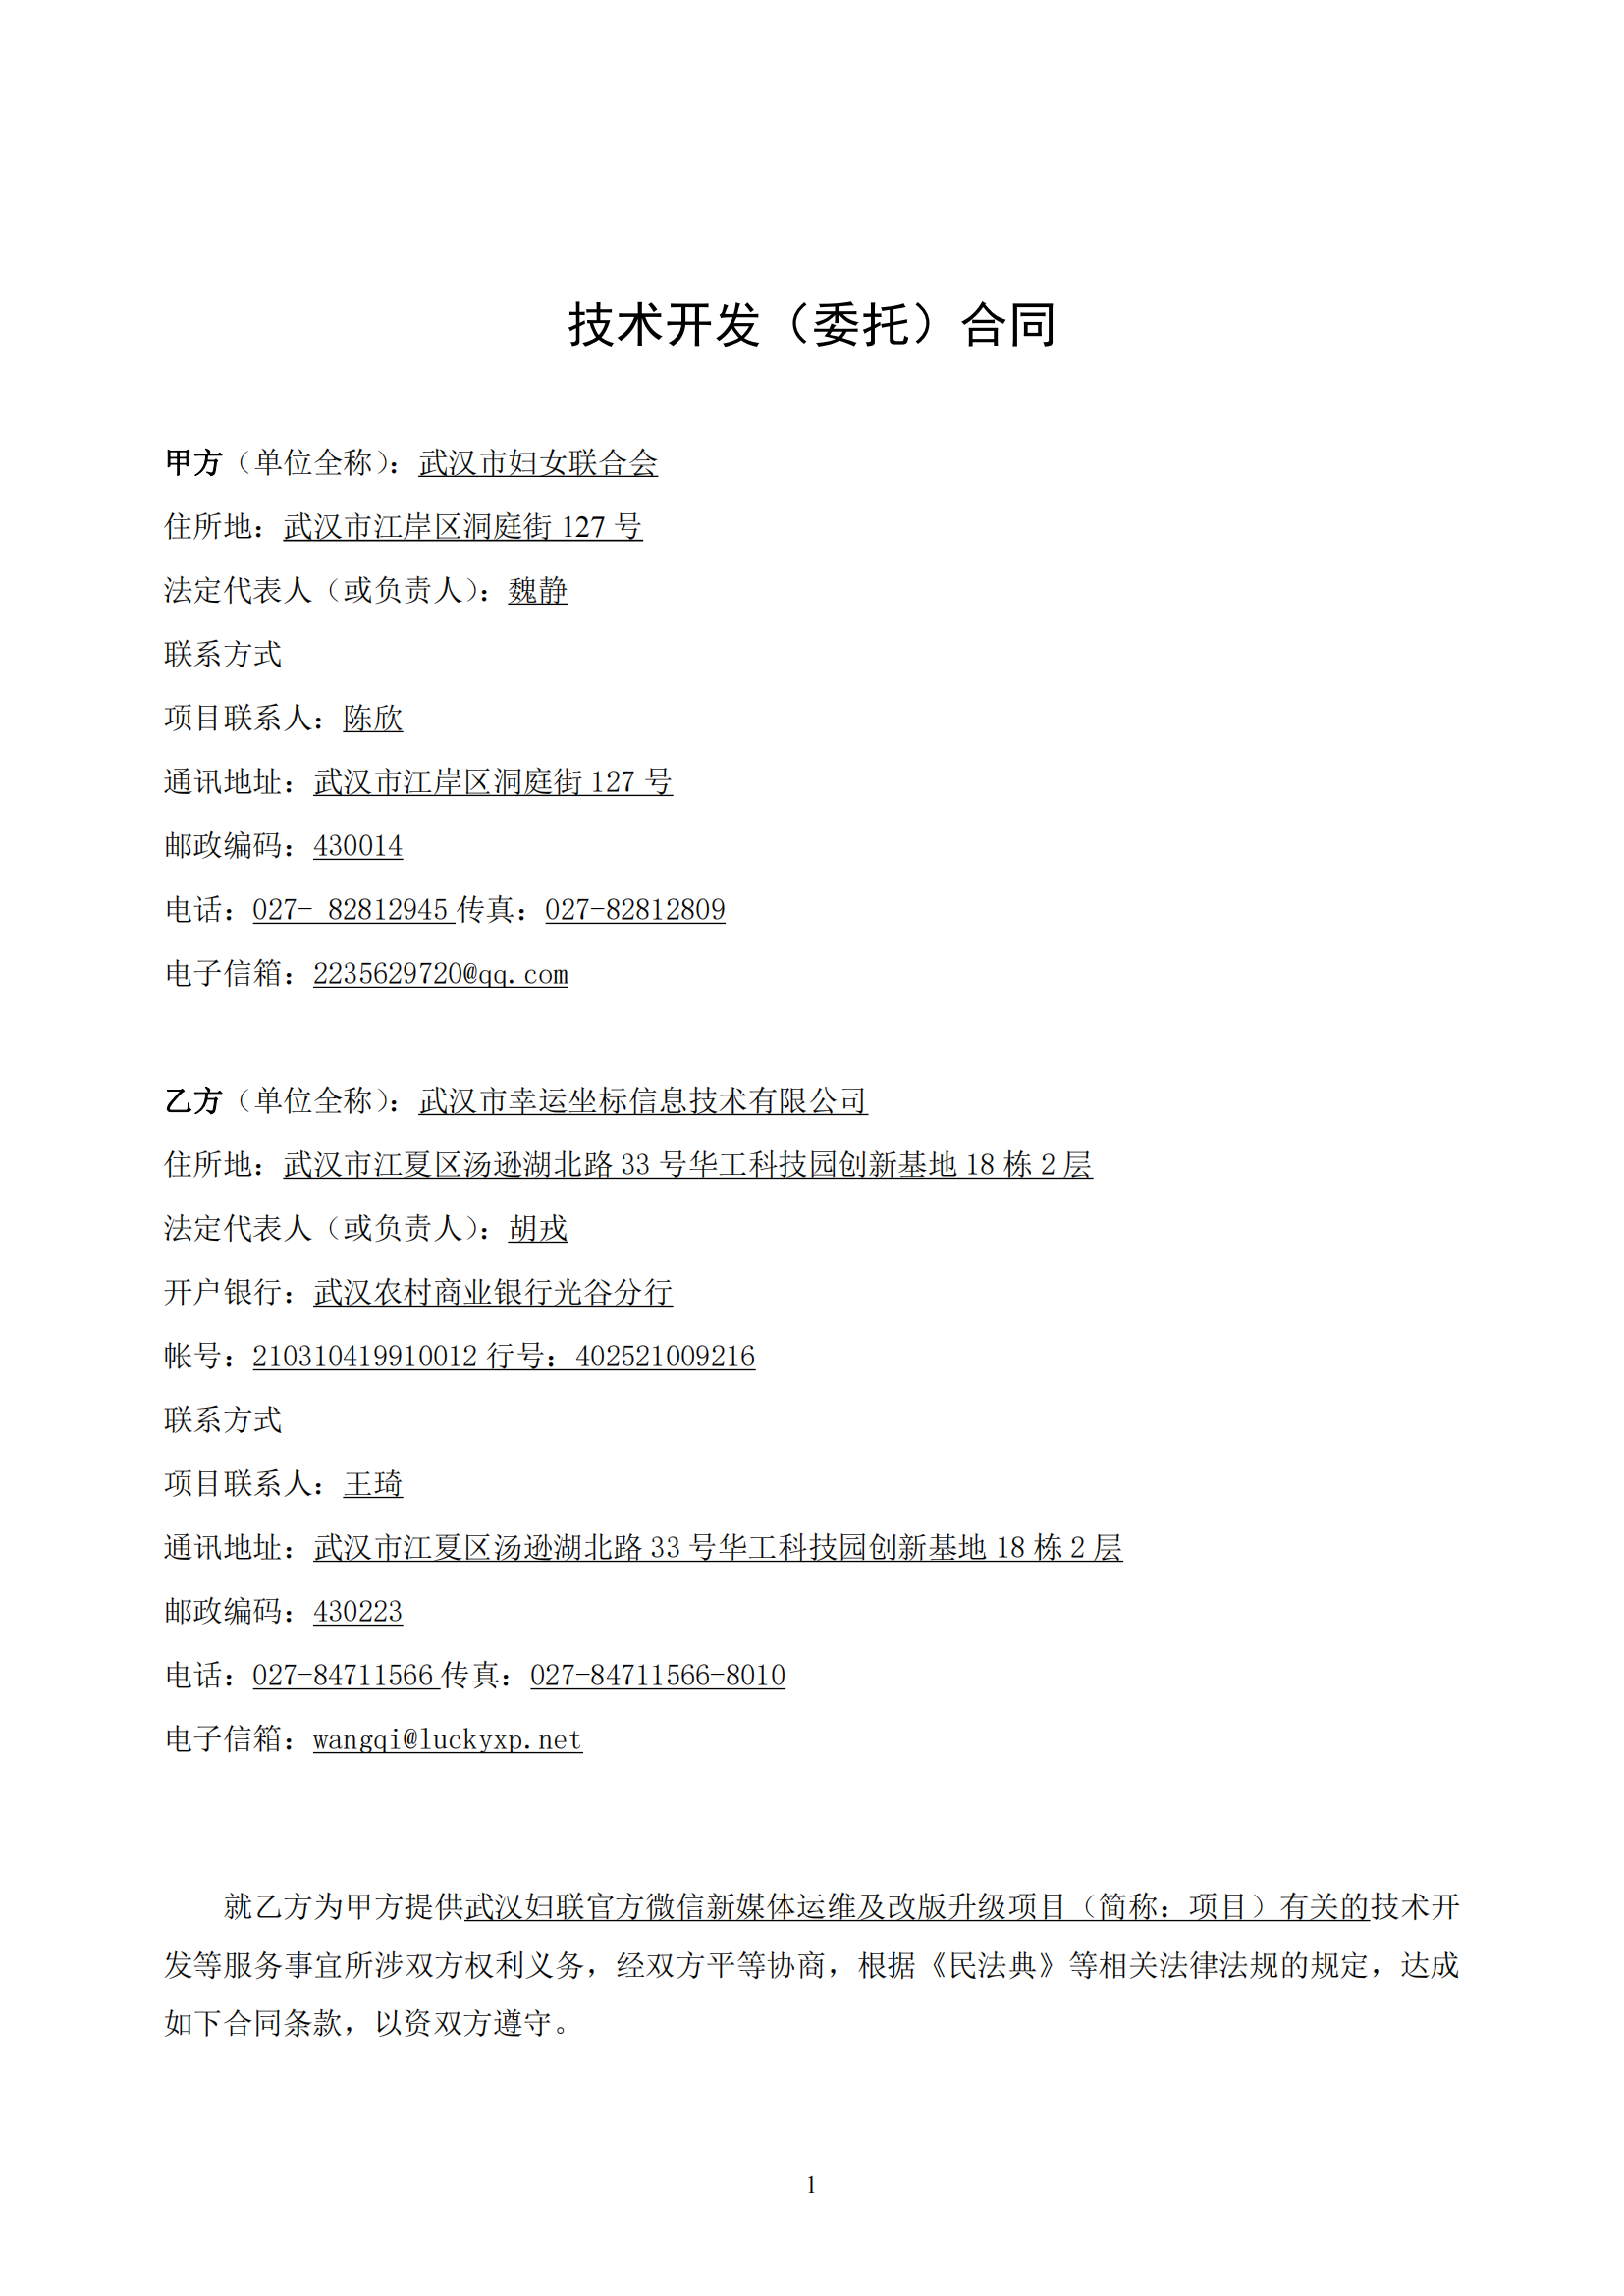 武汉妇联官方微信新媒体运维及改版升级项目合同_01.png